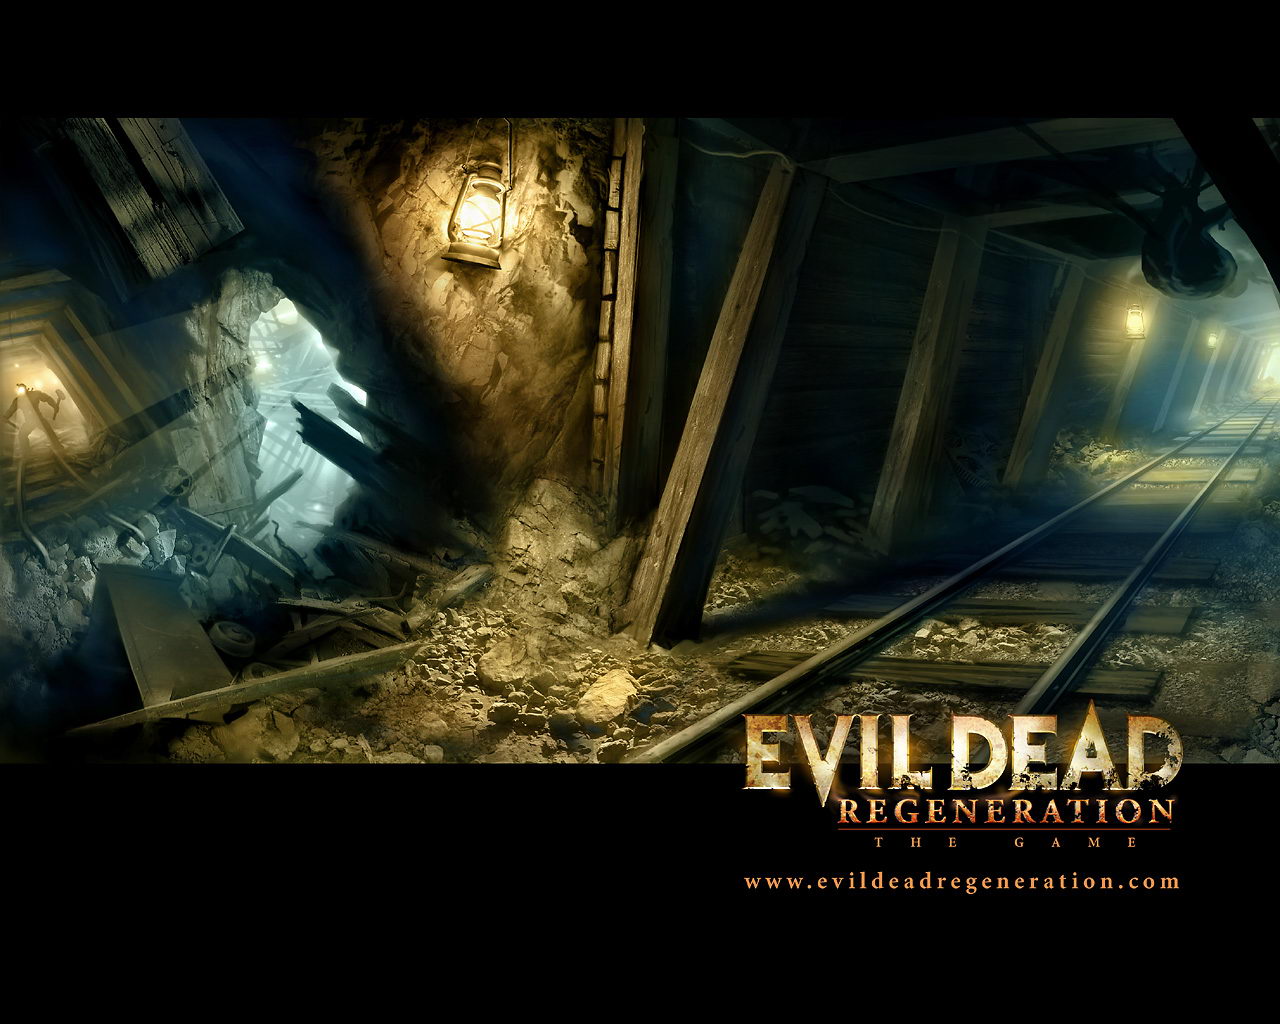 Evil Dead wallpapers for desktop, download free Evil Dead pictures